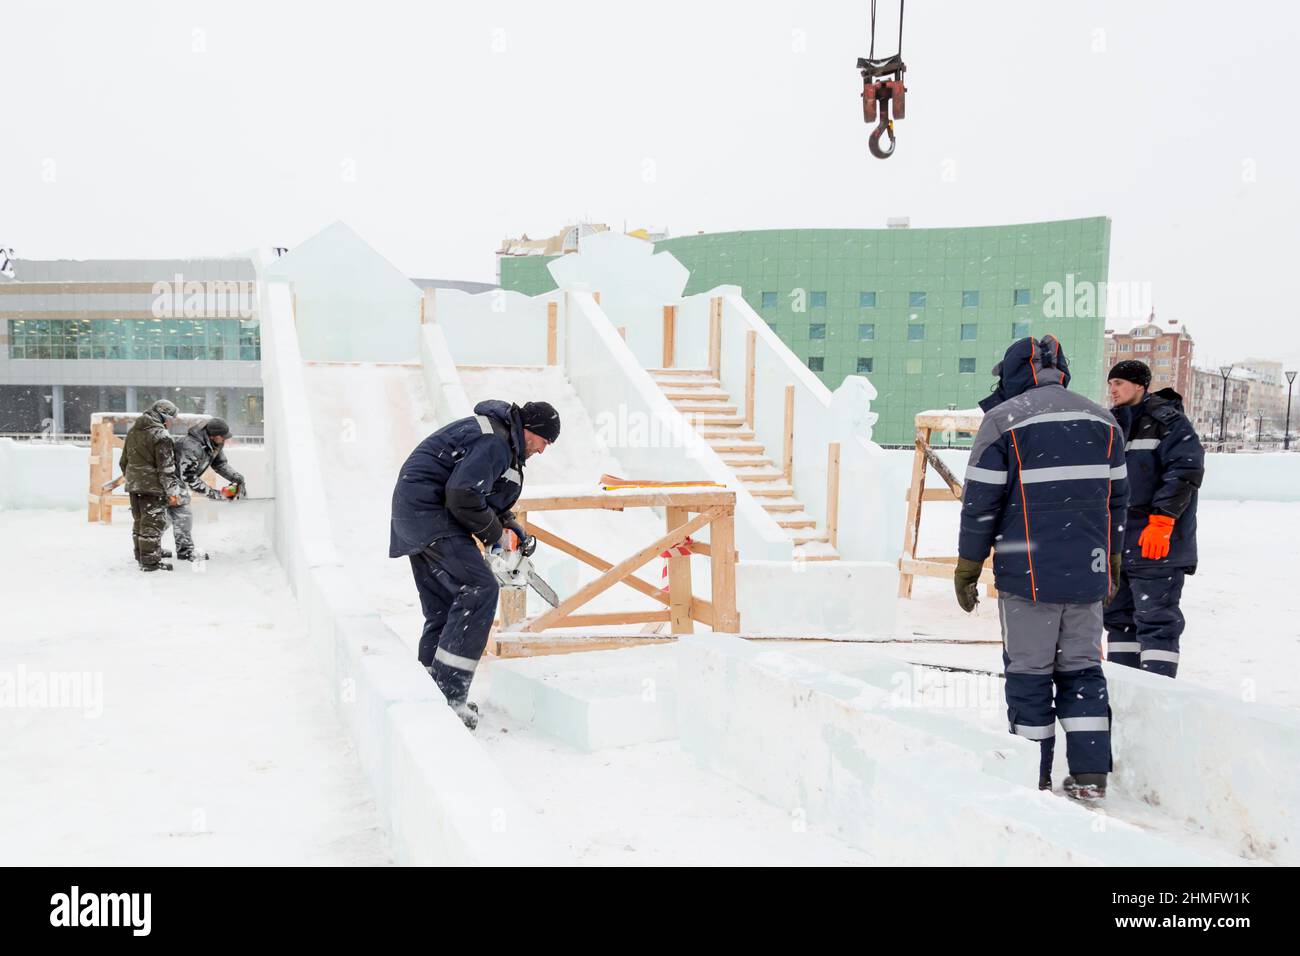 Auf der Baustelle der Eisstadt bauen Installateure eine Eisrutsche Stockfoto